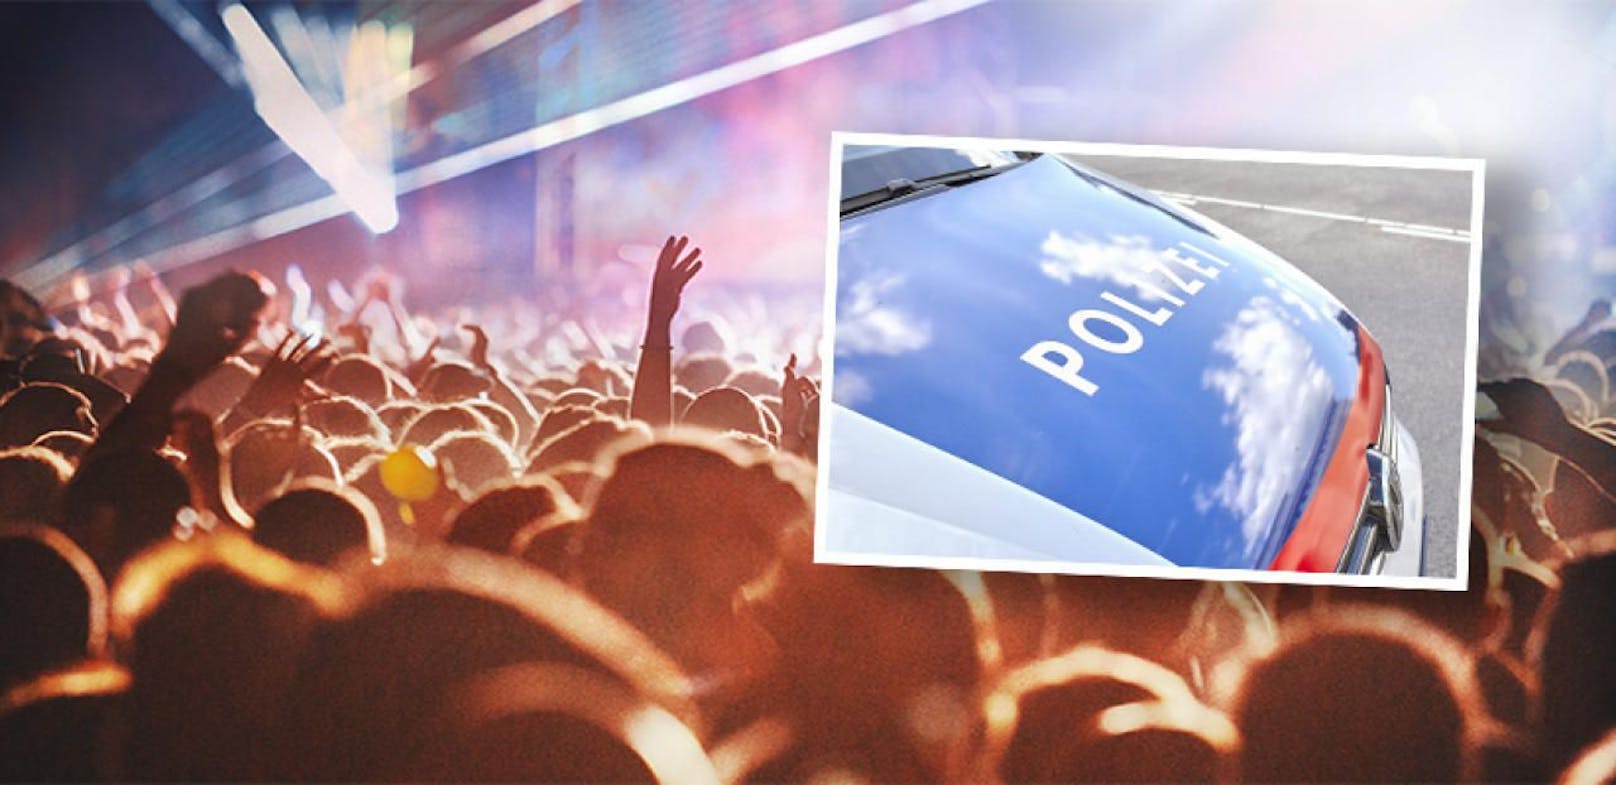 Polizei "crasht" illegale Rave-Party in Steinbruch